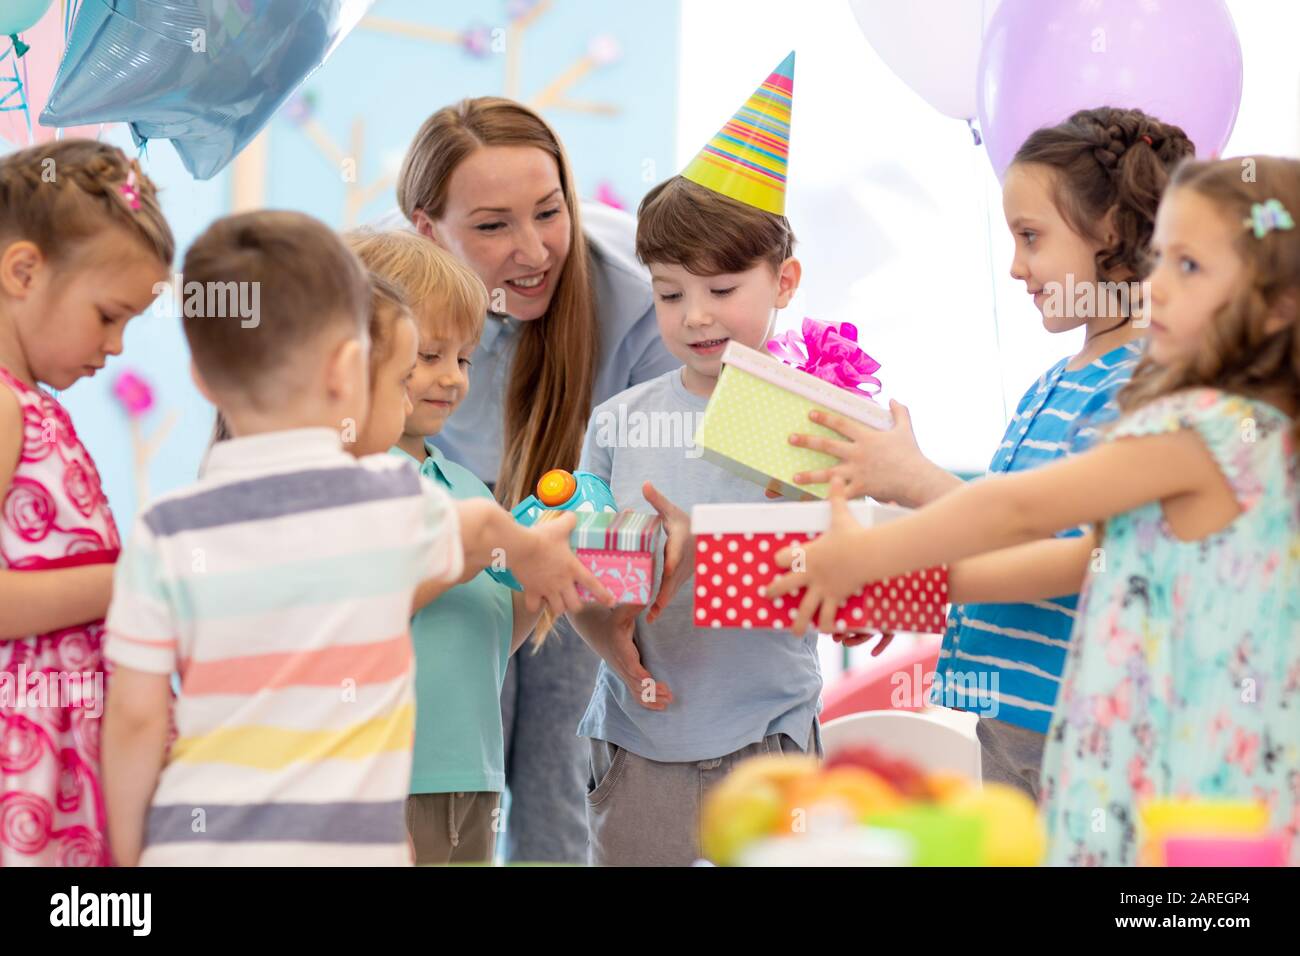 Infanzia, vacanze, celebrazione, amicizia e il concetto di popolo. Dei bambini felici in party cappelli regali di compleanno Foto Stock